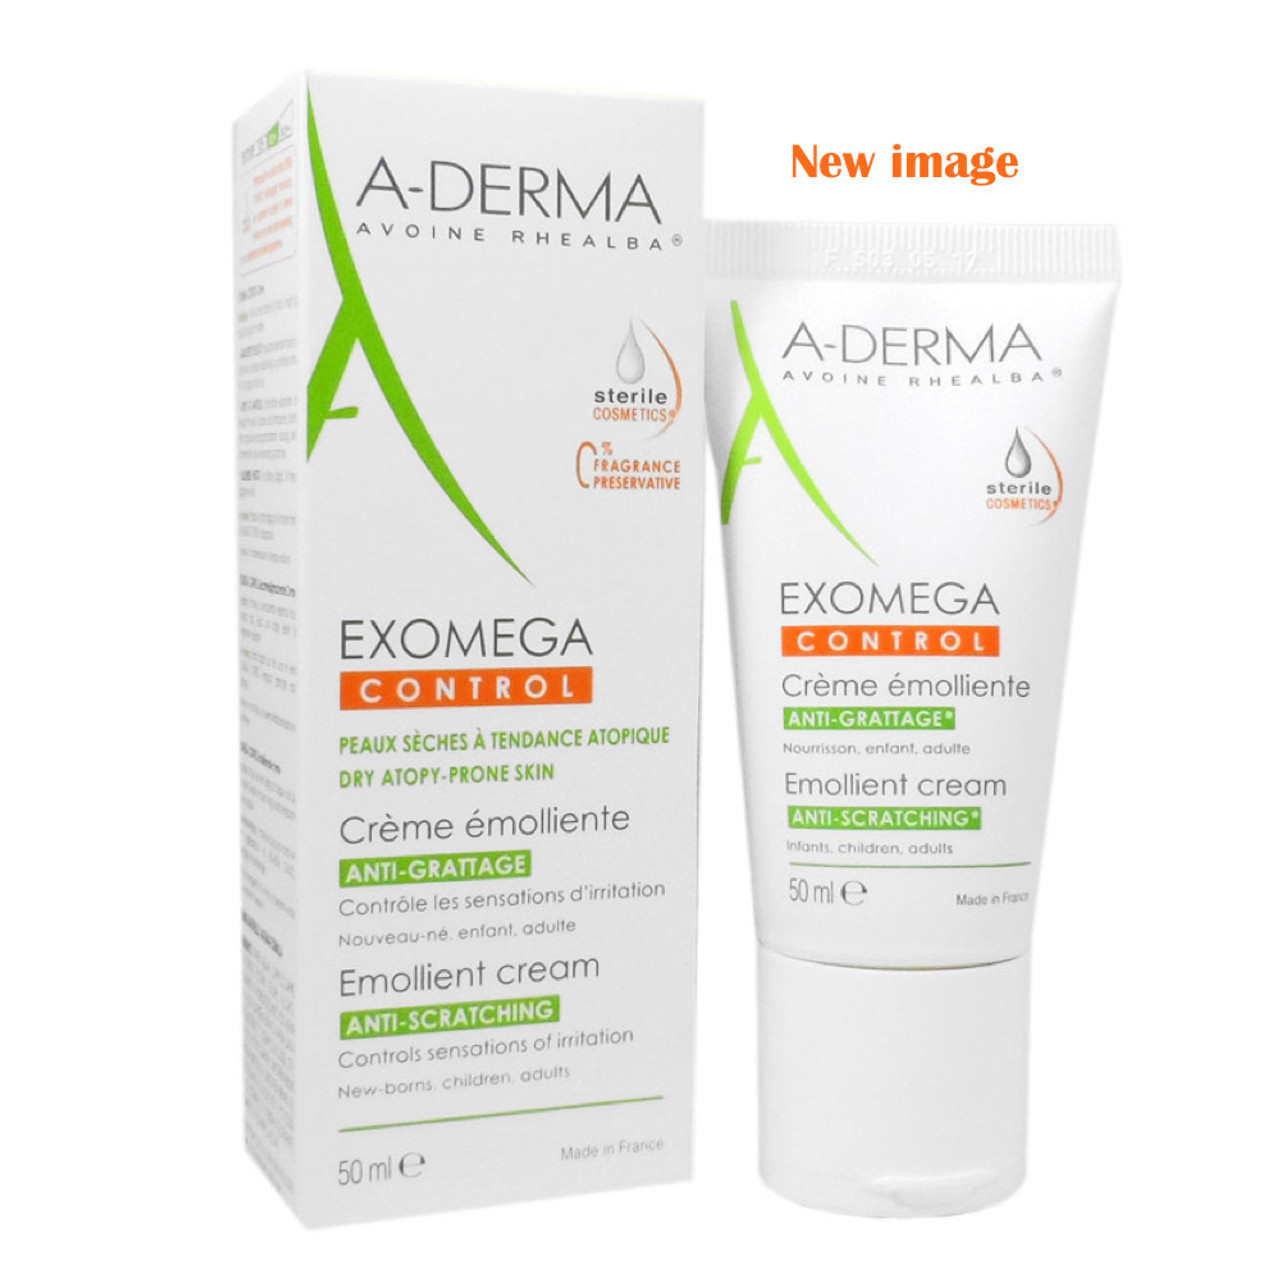 A-Derma Dermalibour + Regenerating CICA Cream, 50 mL